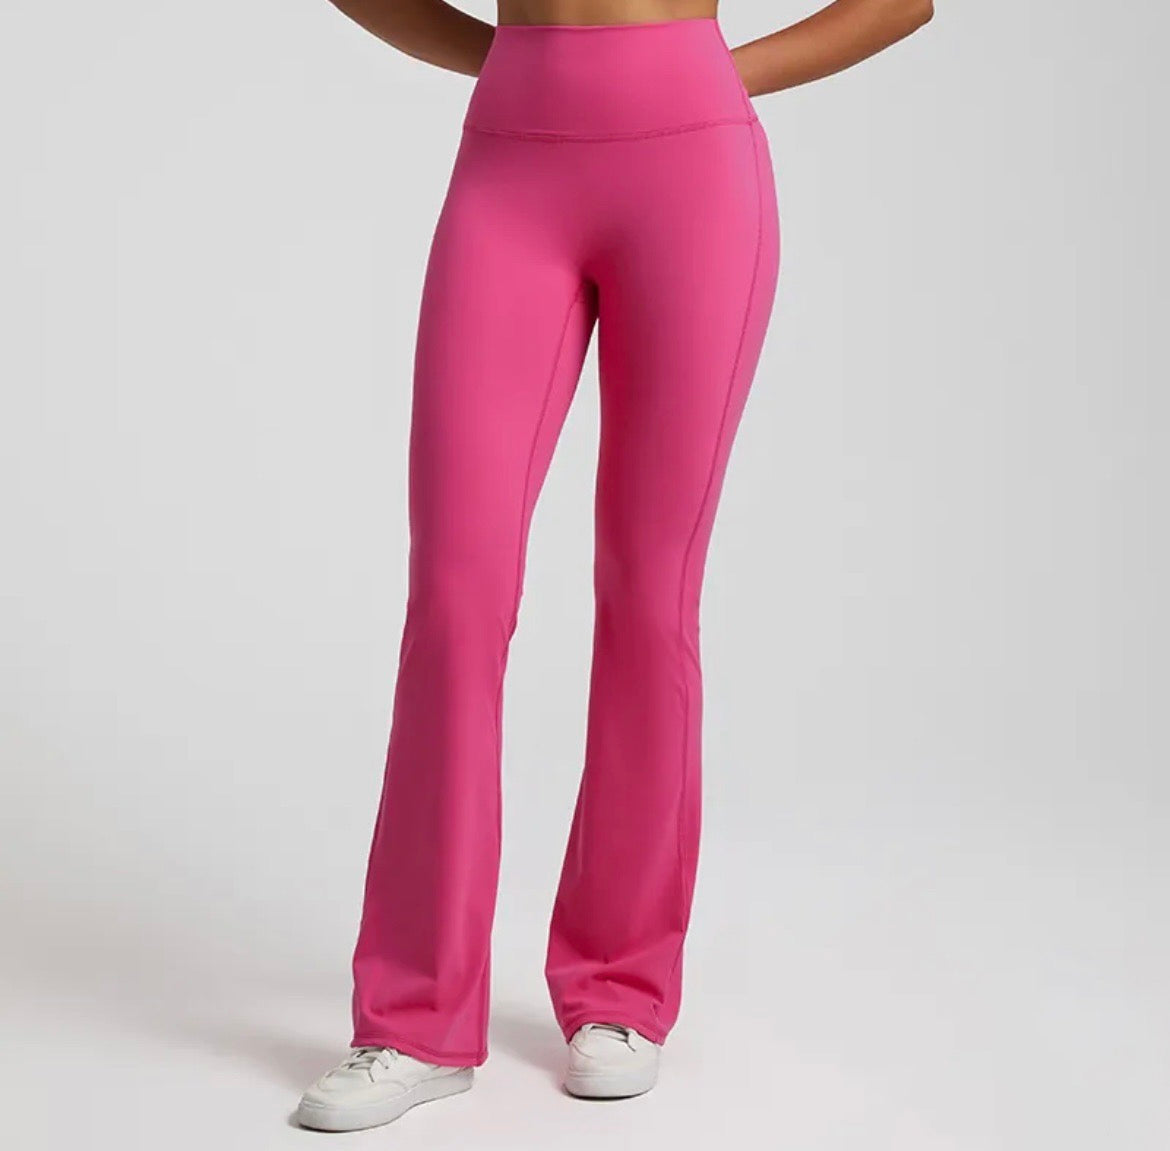 Flared Summer leggings pink – grindhouseathletics